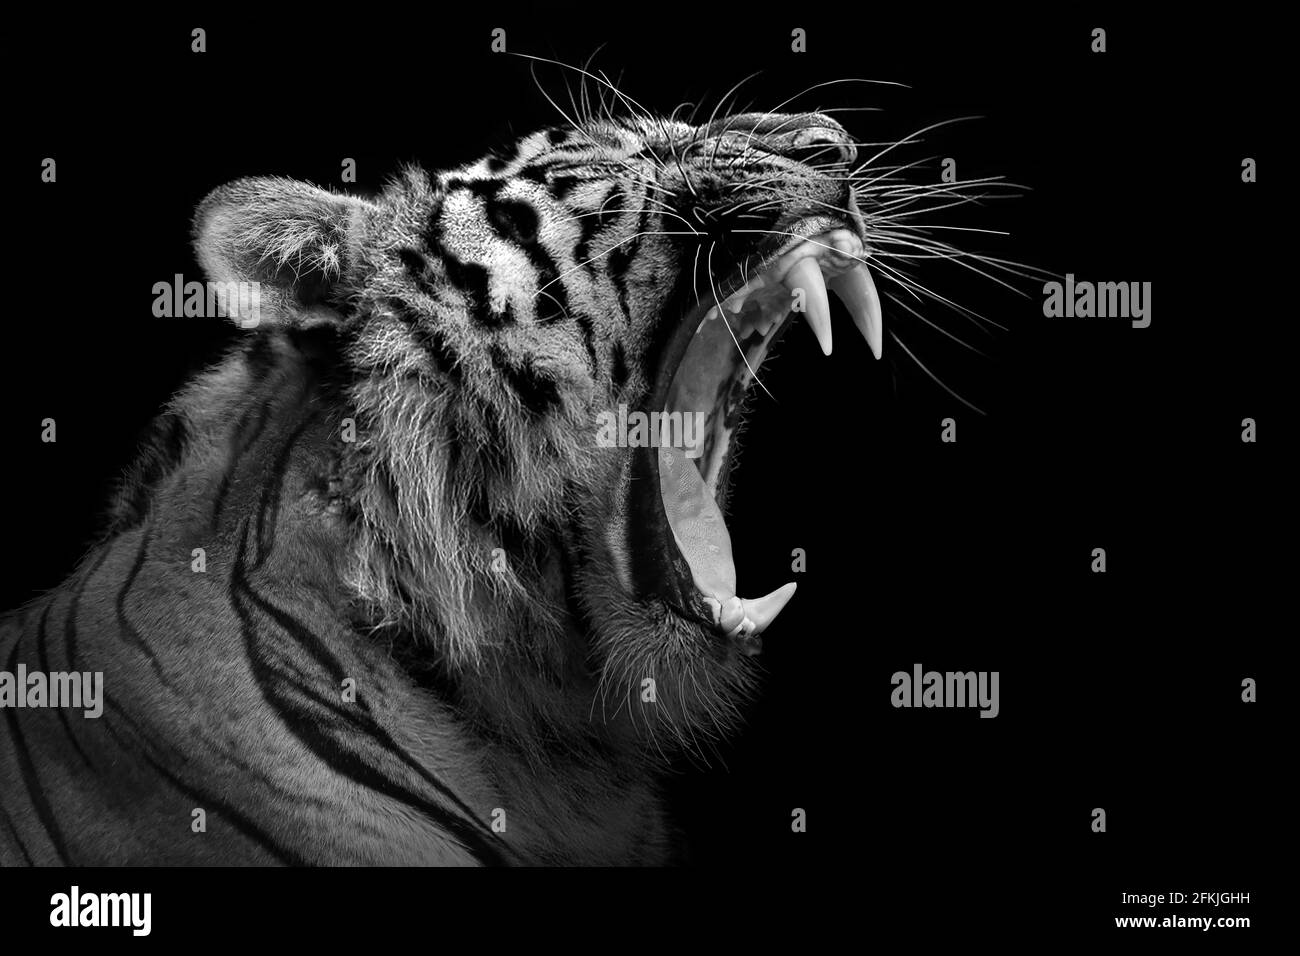 Tigre furioso, animal aislado, cazador de vida silvestre Foto de stock